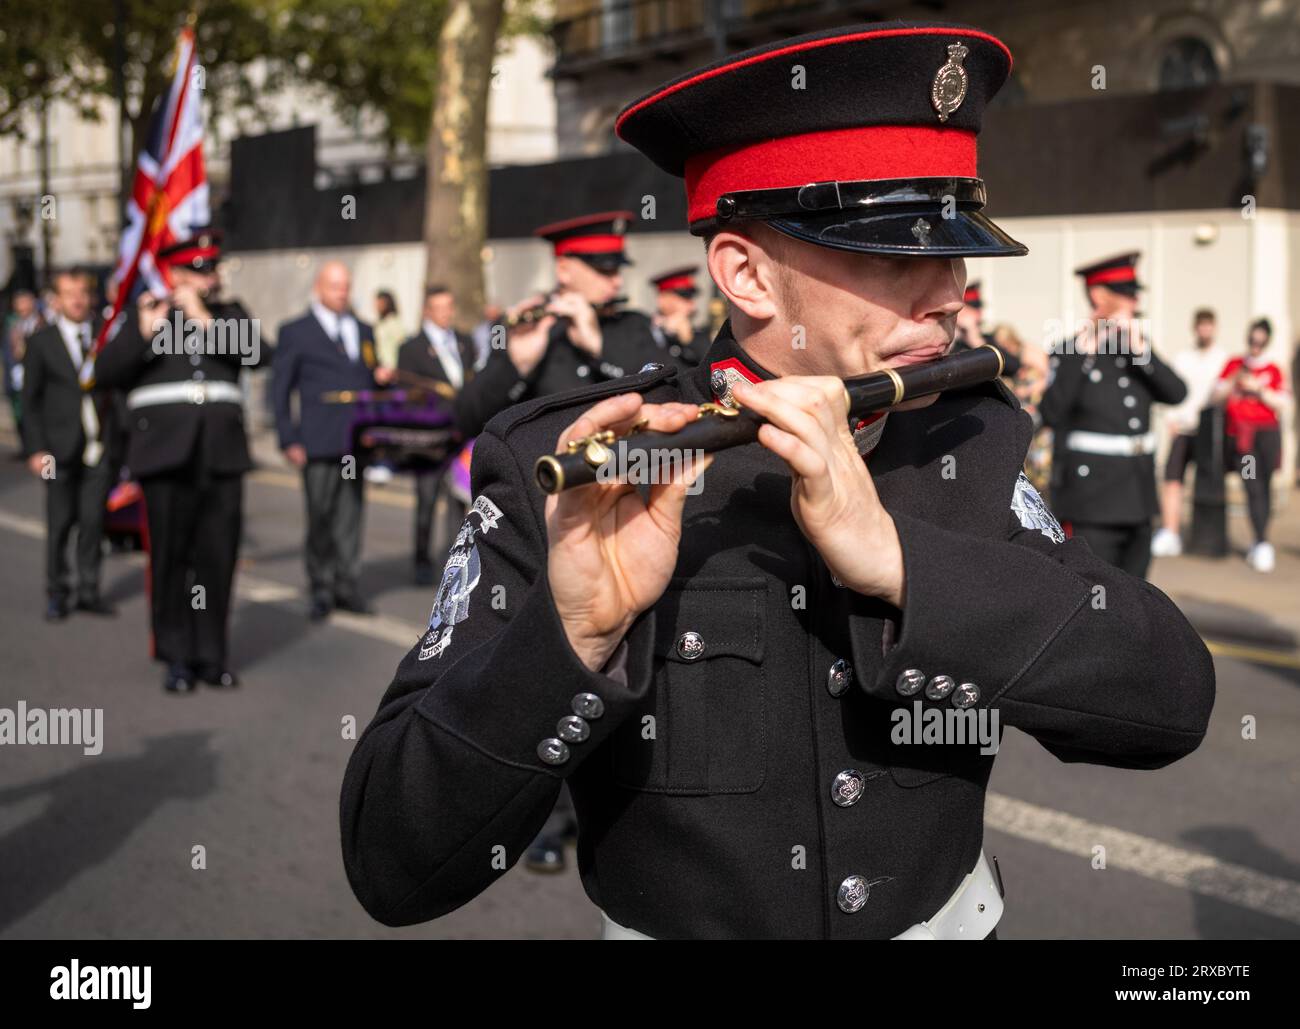 Un membro della banda paramilitare protestante irlandese Ulster Volunteer Force (UVF) suona il flauto al Cenotaph War Memorial a Whitehall, Londra Foto Stock